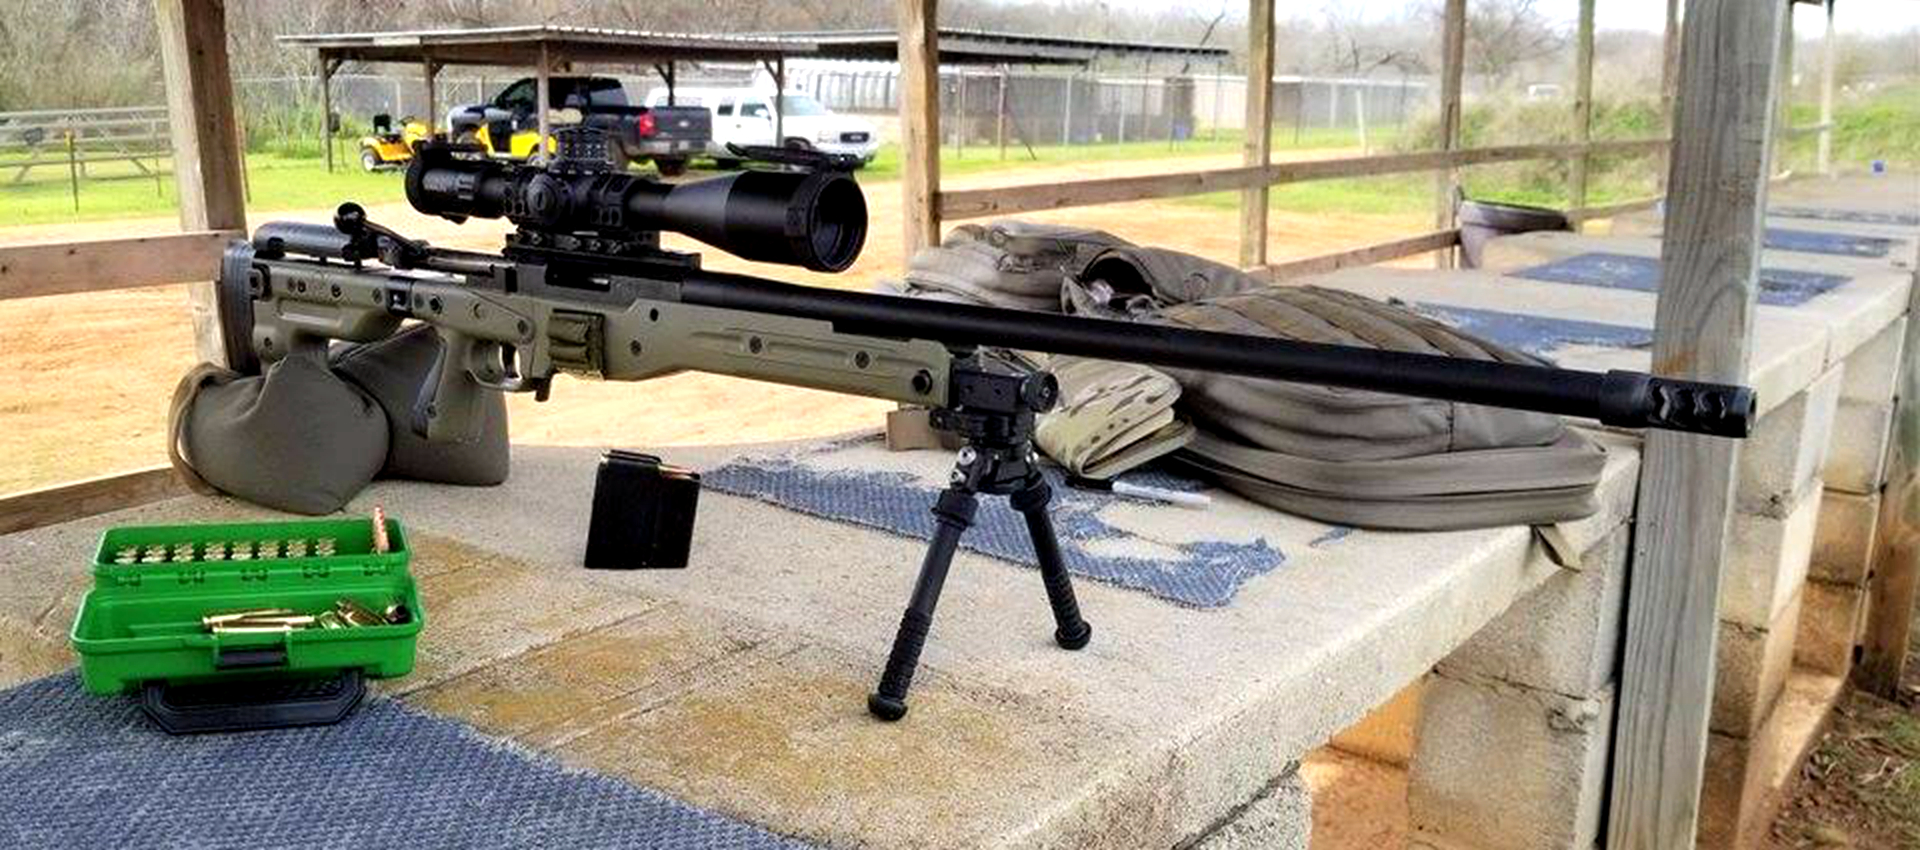 50 osv-96狙击步枪 鲁格 m77:是一把由美国儒格-斯特姆公司制造的